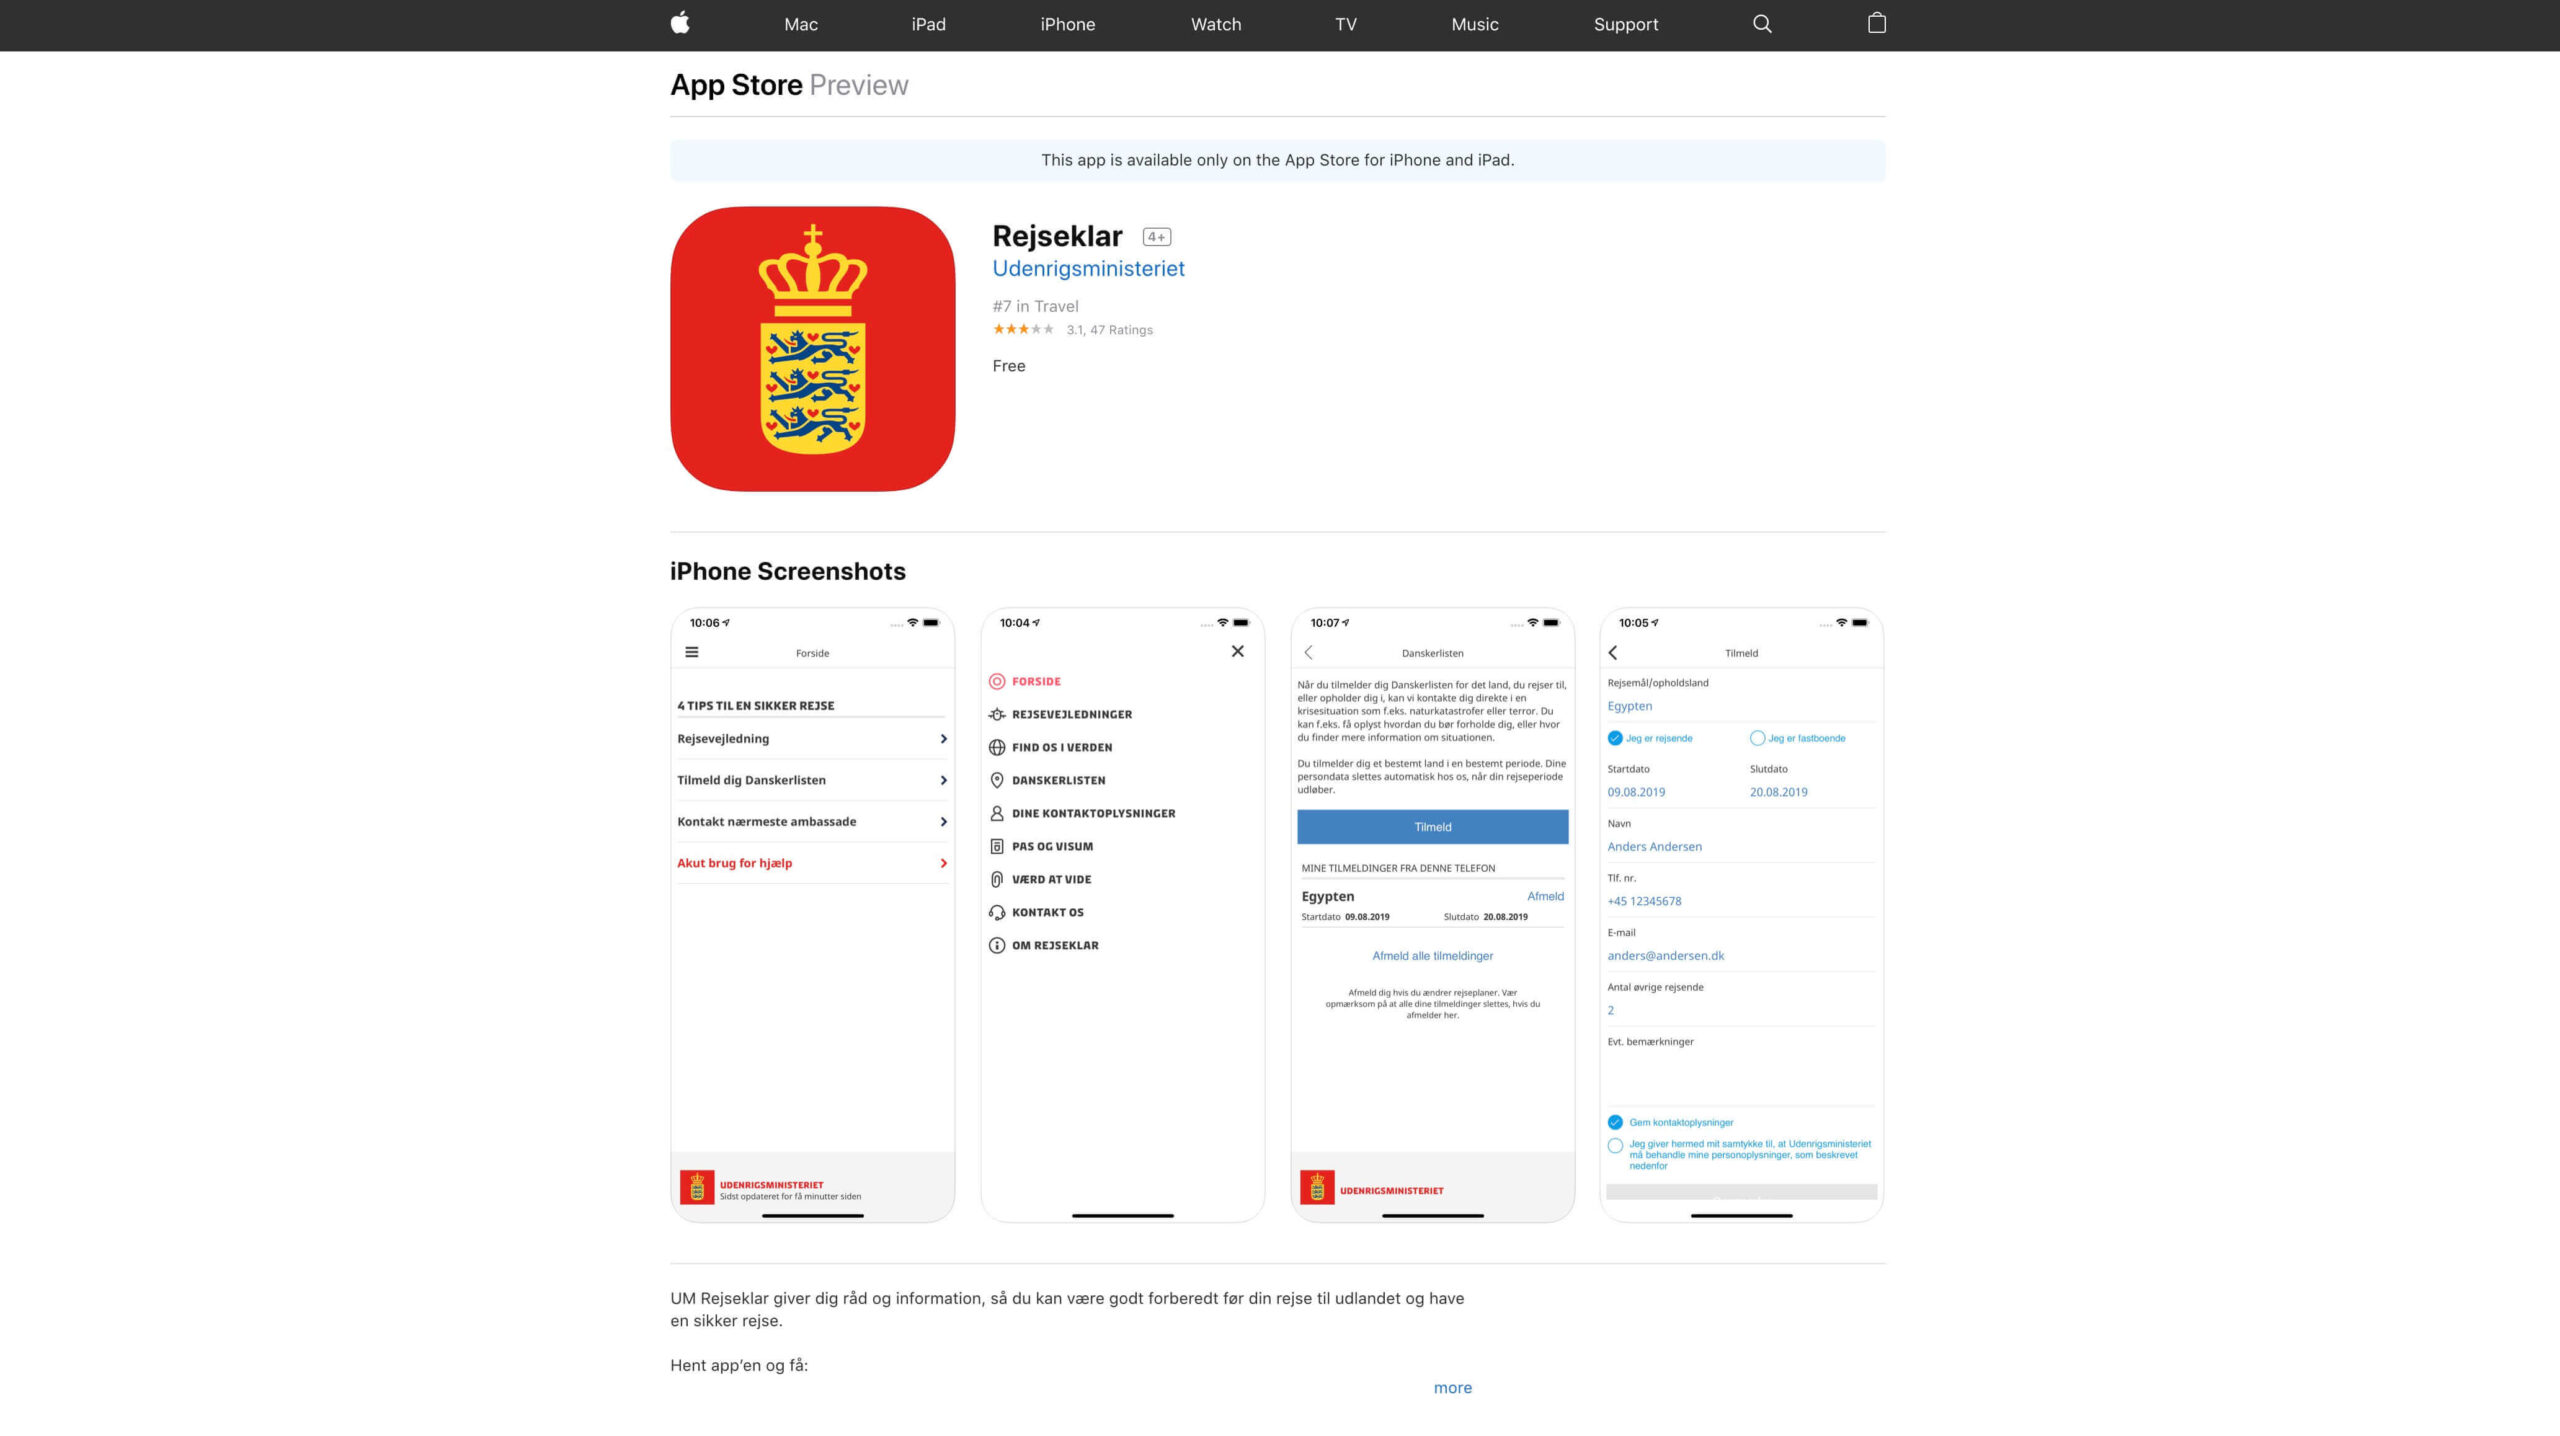 Rejseklar udenrigsministeriets app danskerlisten